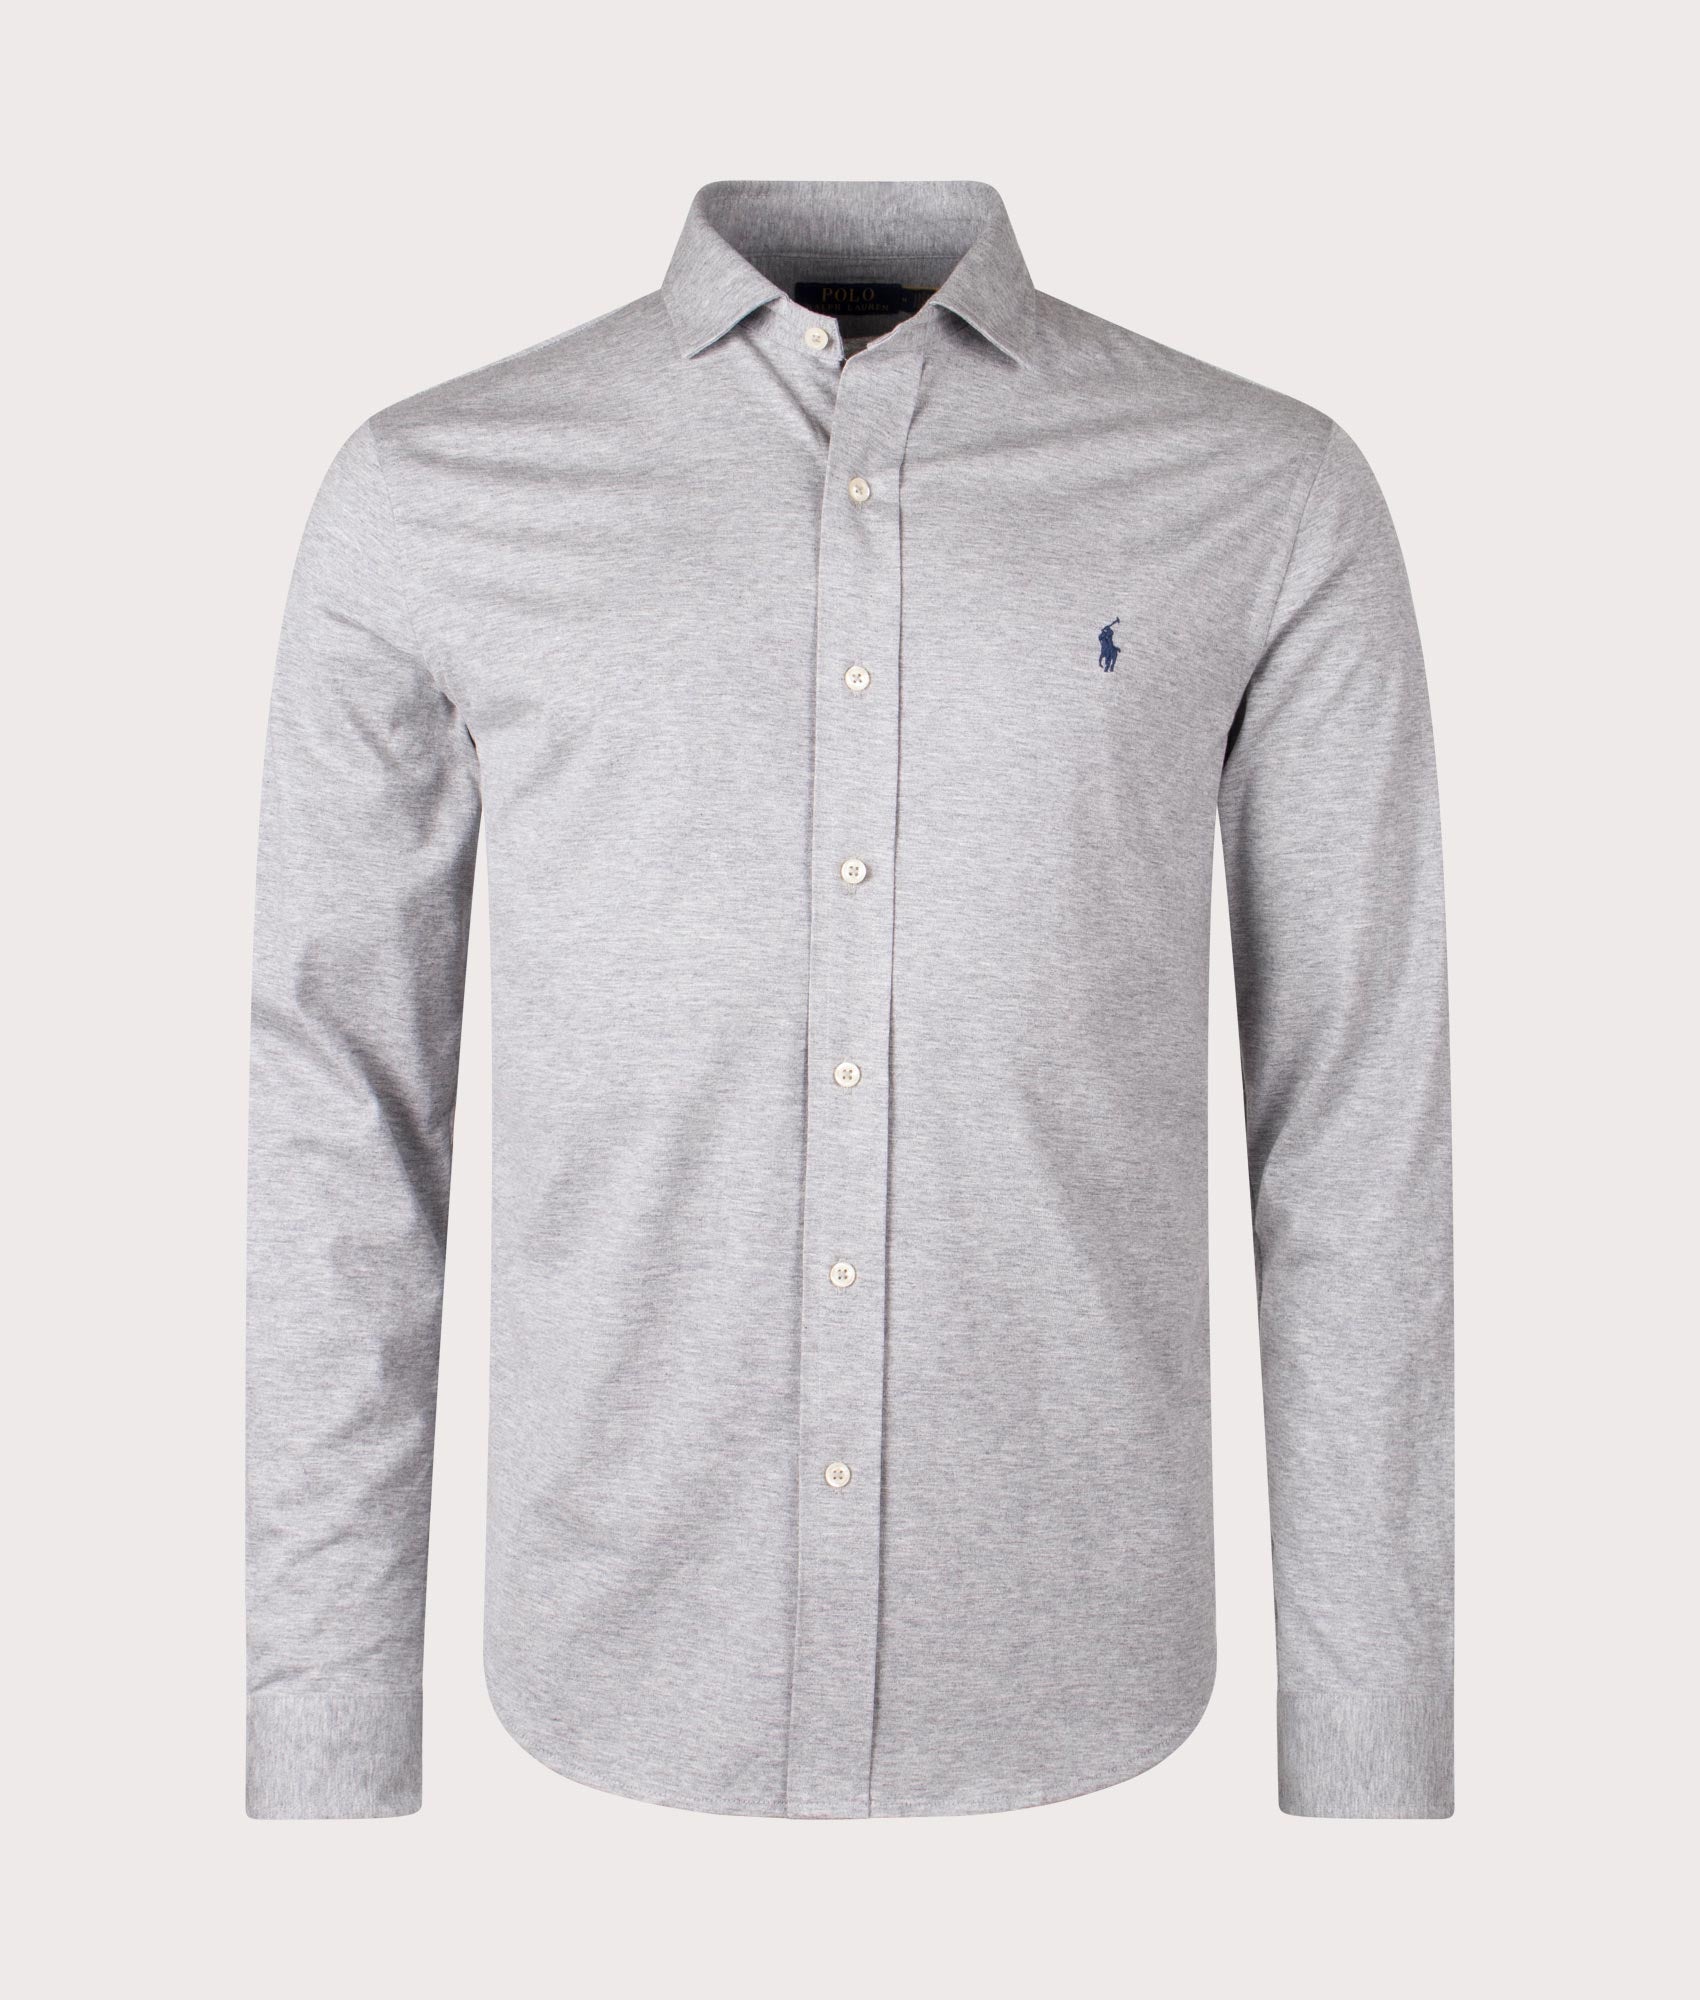 Polo Ralph Lauren Mens Estate Collar Jersey Shirt - Colour: 002 Andover Heather - Size: Medium